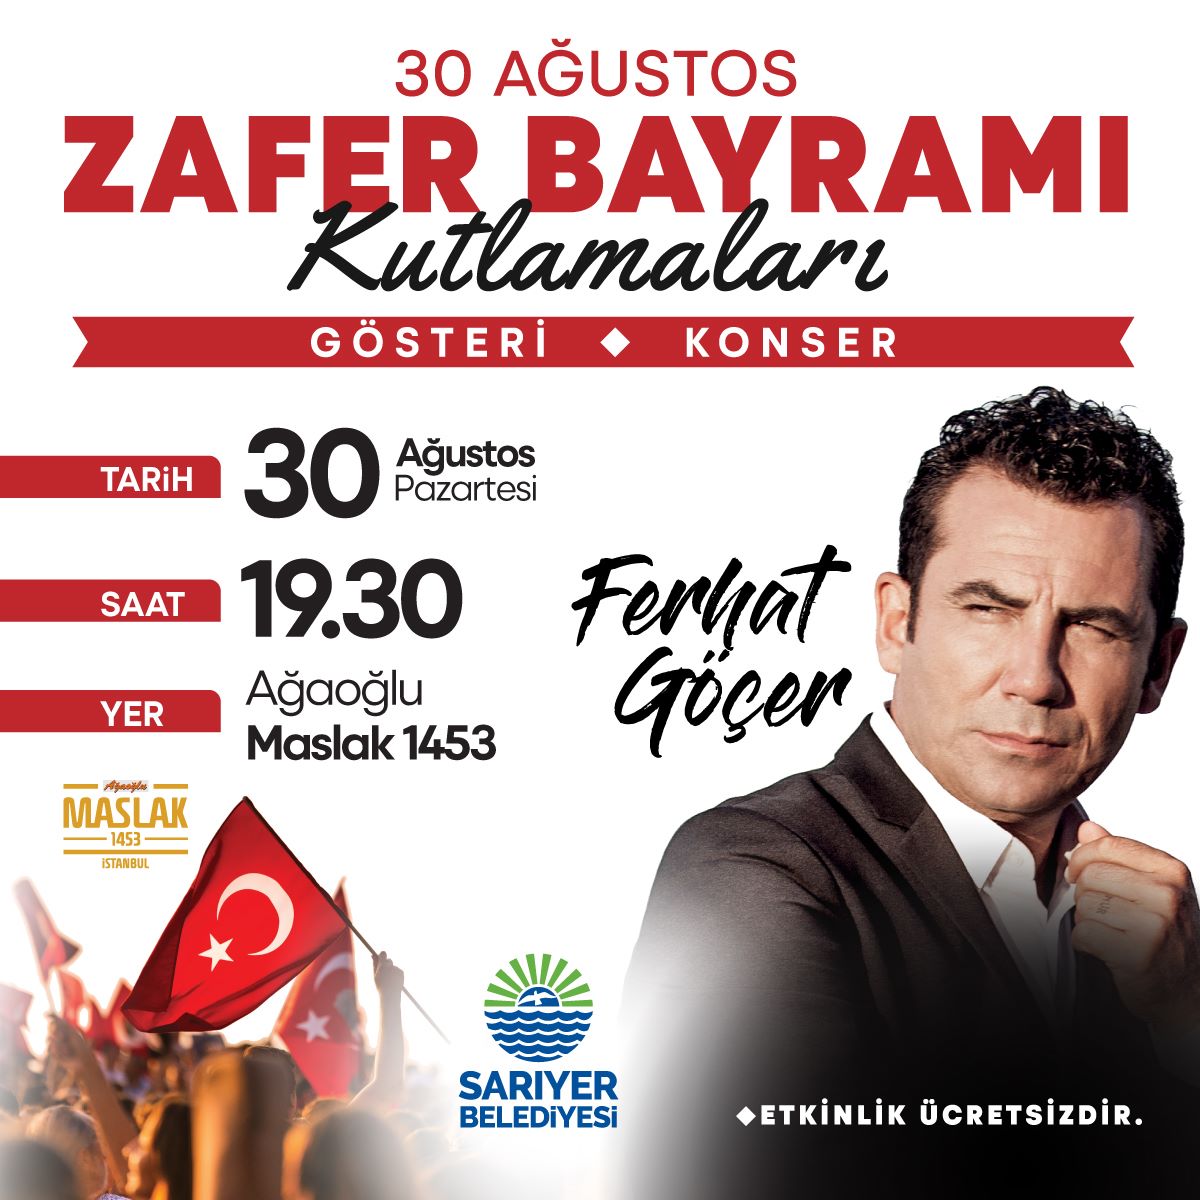 sariyer belediyesi 30 agustos zafer bayrami ferhat gocer konseri etkinlik istanbul